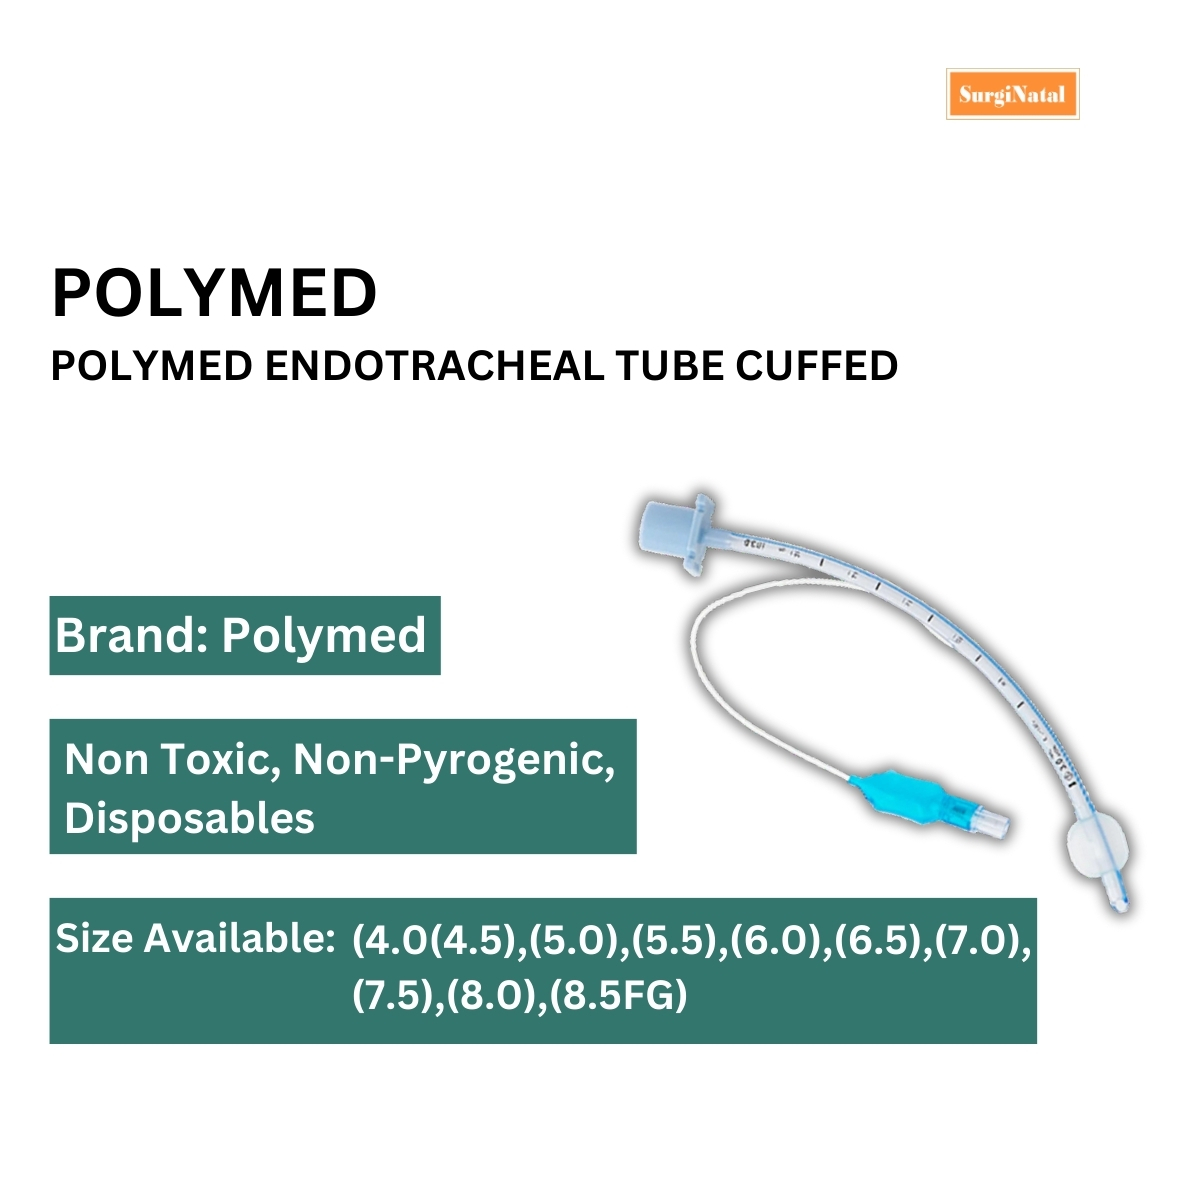  polymed endotracheal tube cuffed